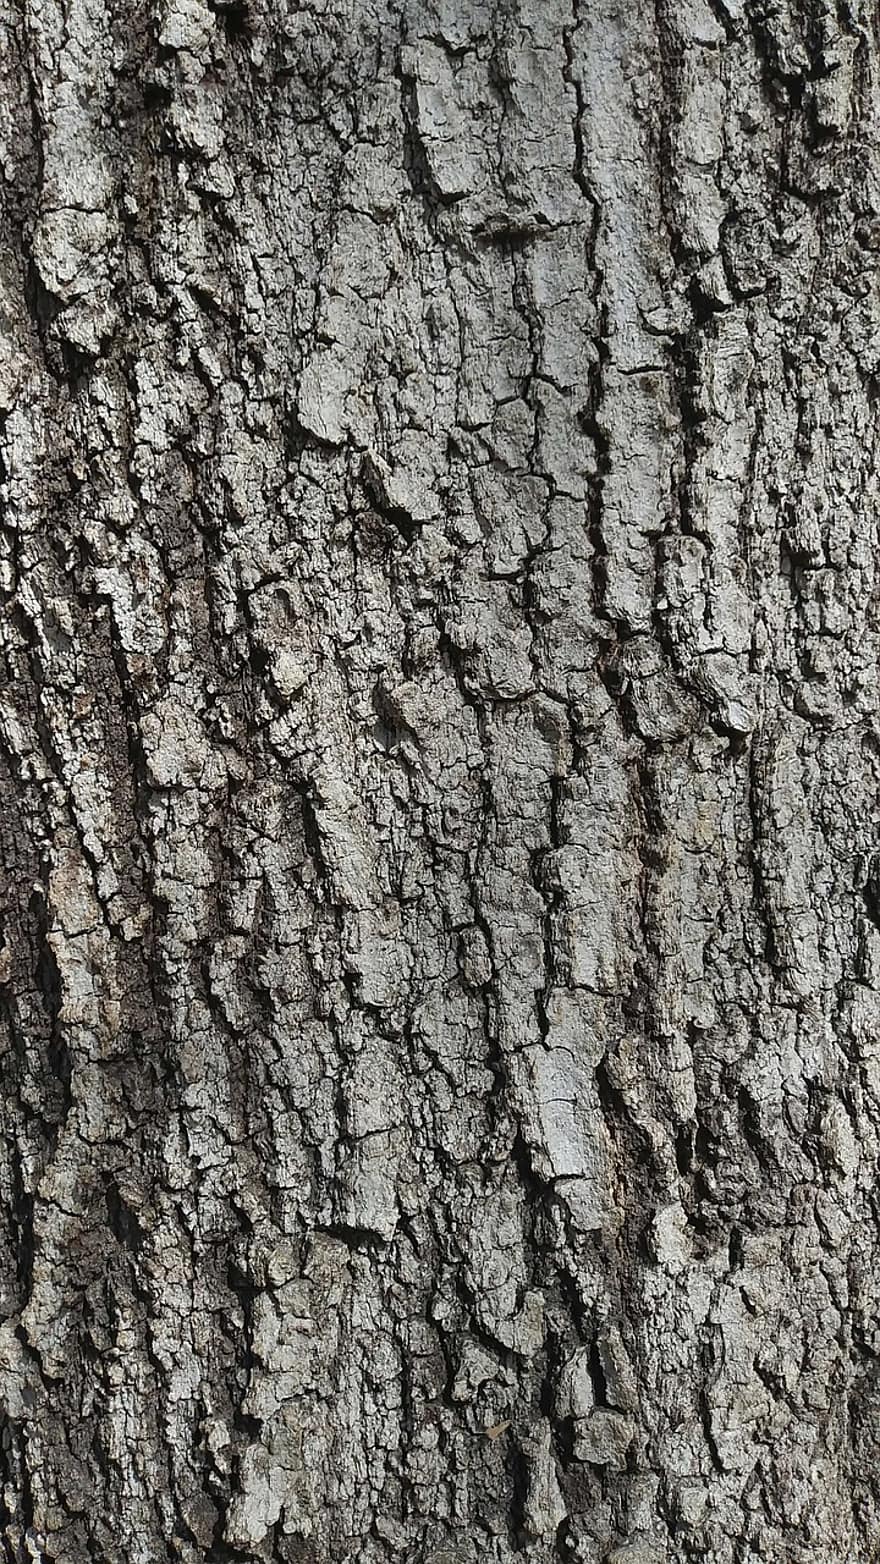 drzewo, szczekać, drewno, tekstura, brązowy, szorstki, dąb, tła, zbliżenie, wzór, pnia drzewa